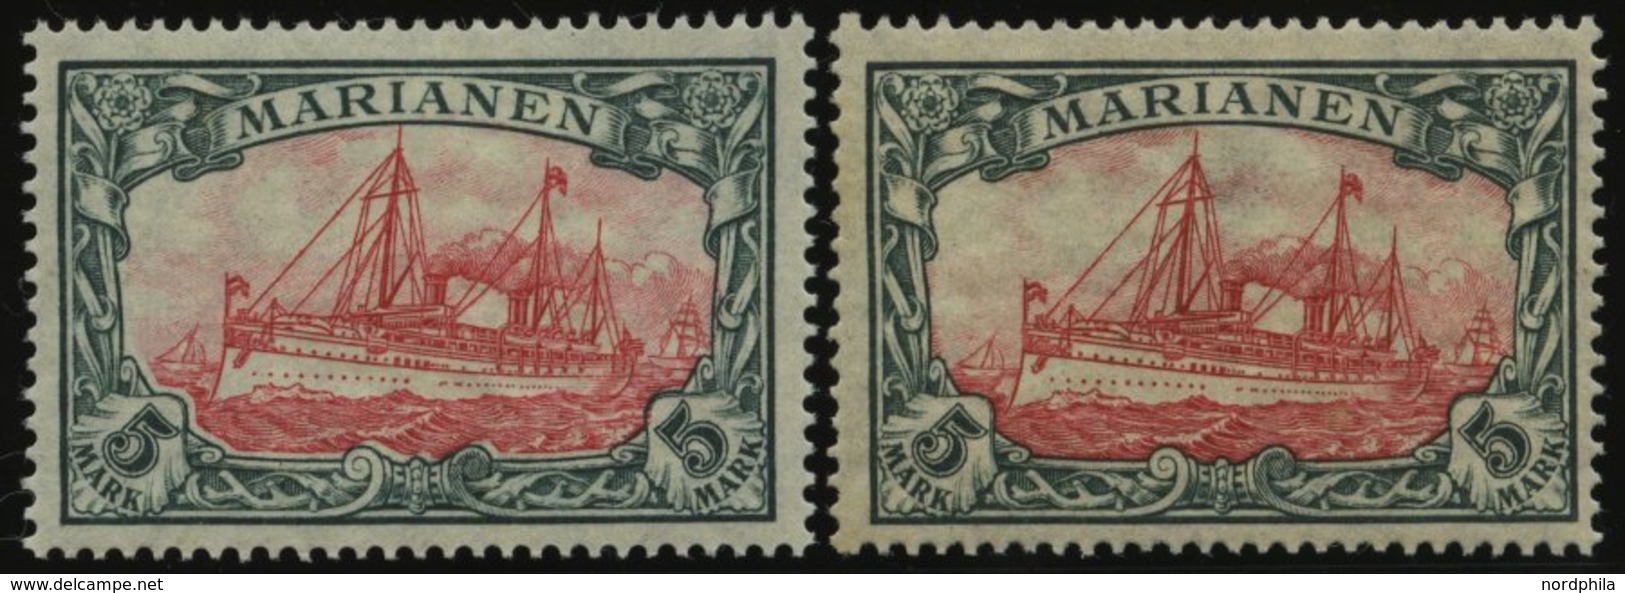 MARIANEN 21A/B *, 1916, 5 M., Mit Wz., Beide Zähnungen, Falzrest, 2 Prachtwerte, Mi. 90.- - Mariana Islands